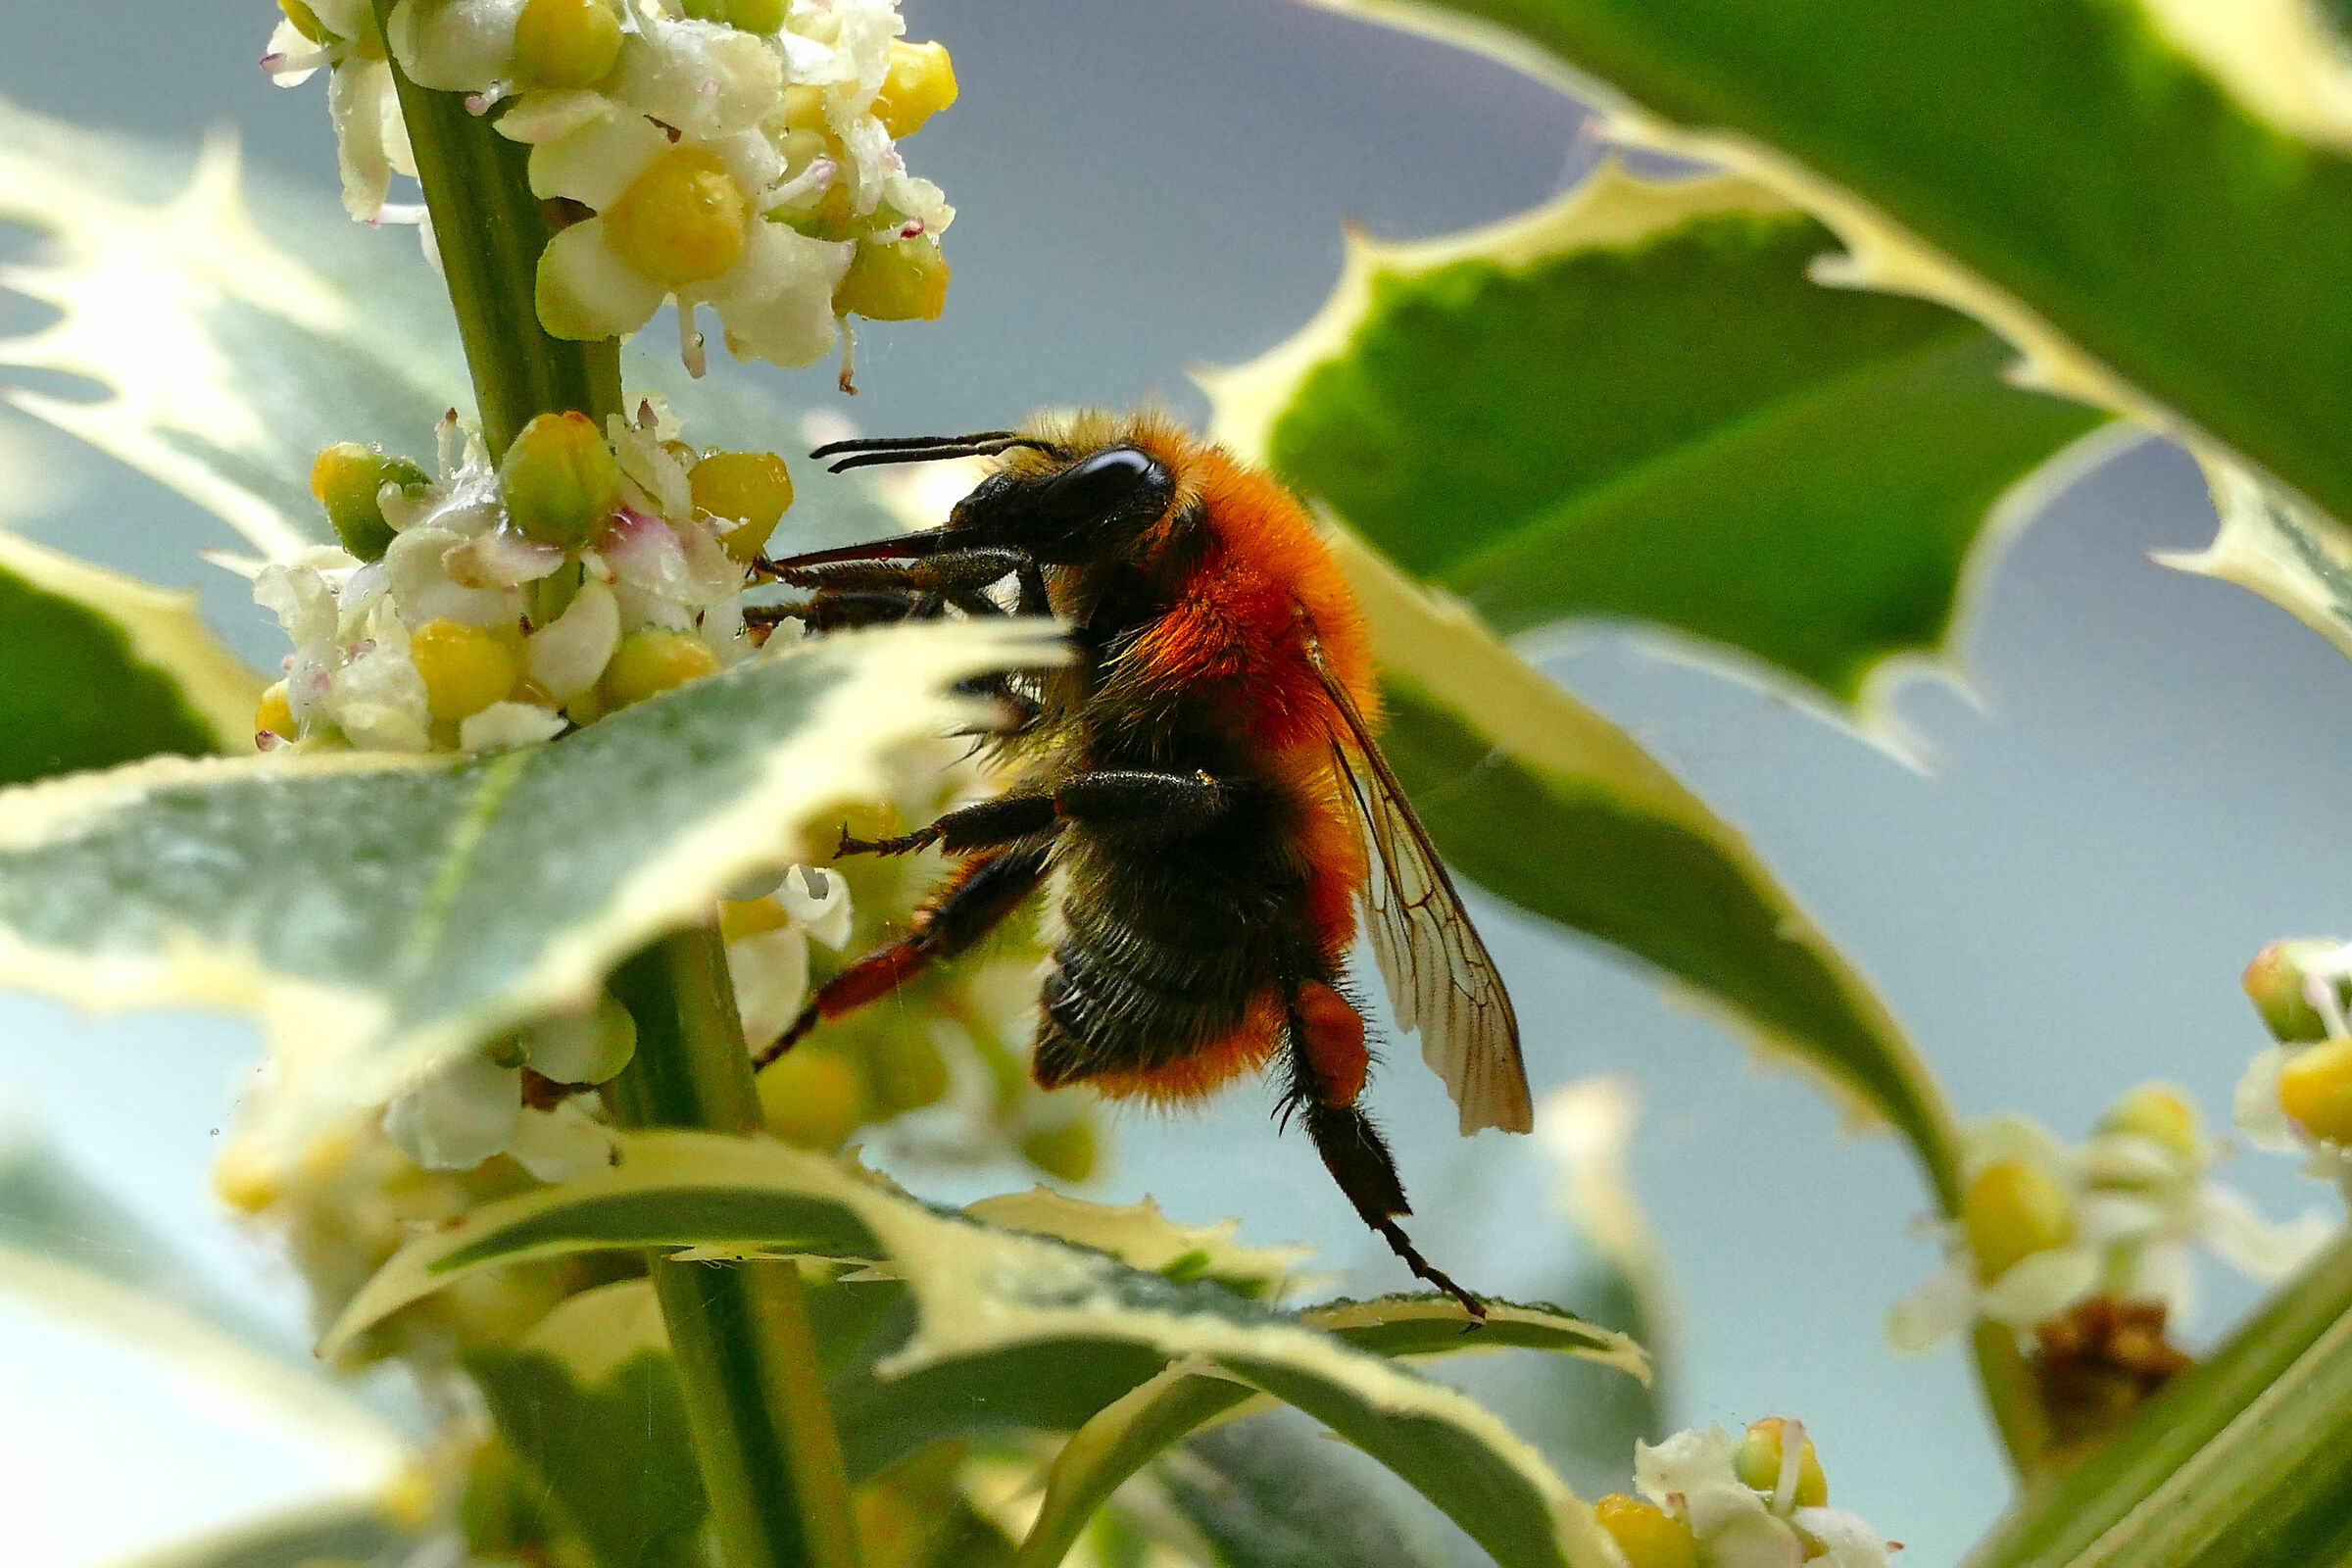 Acrobatic bumblebee...